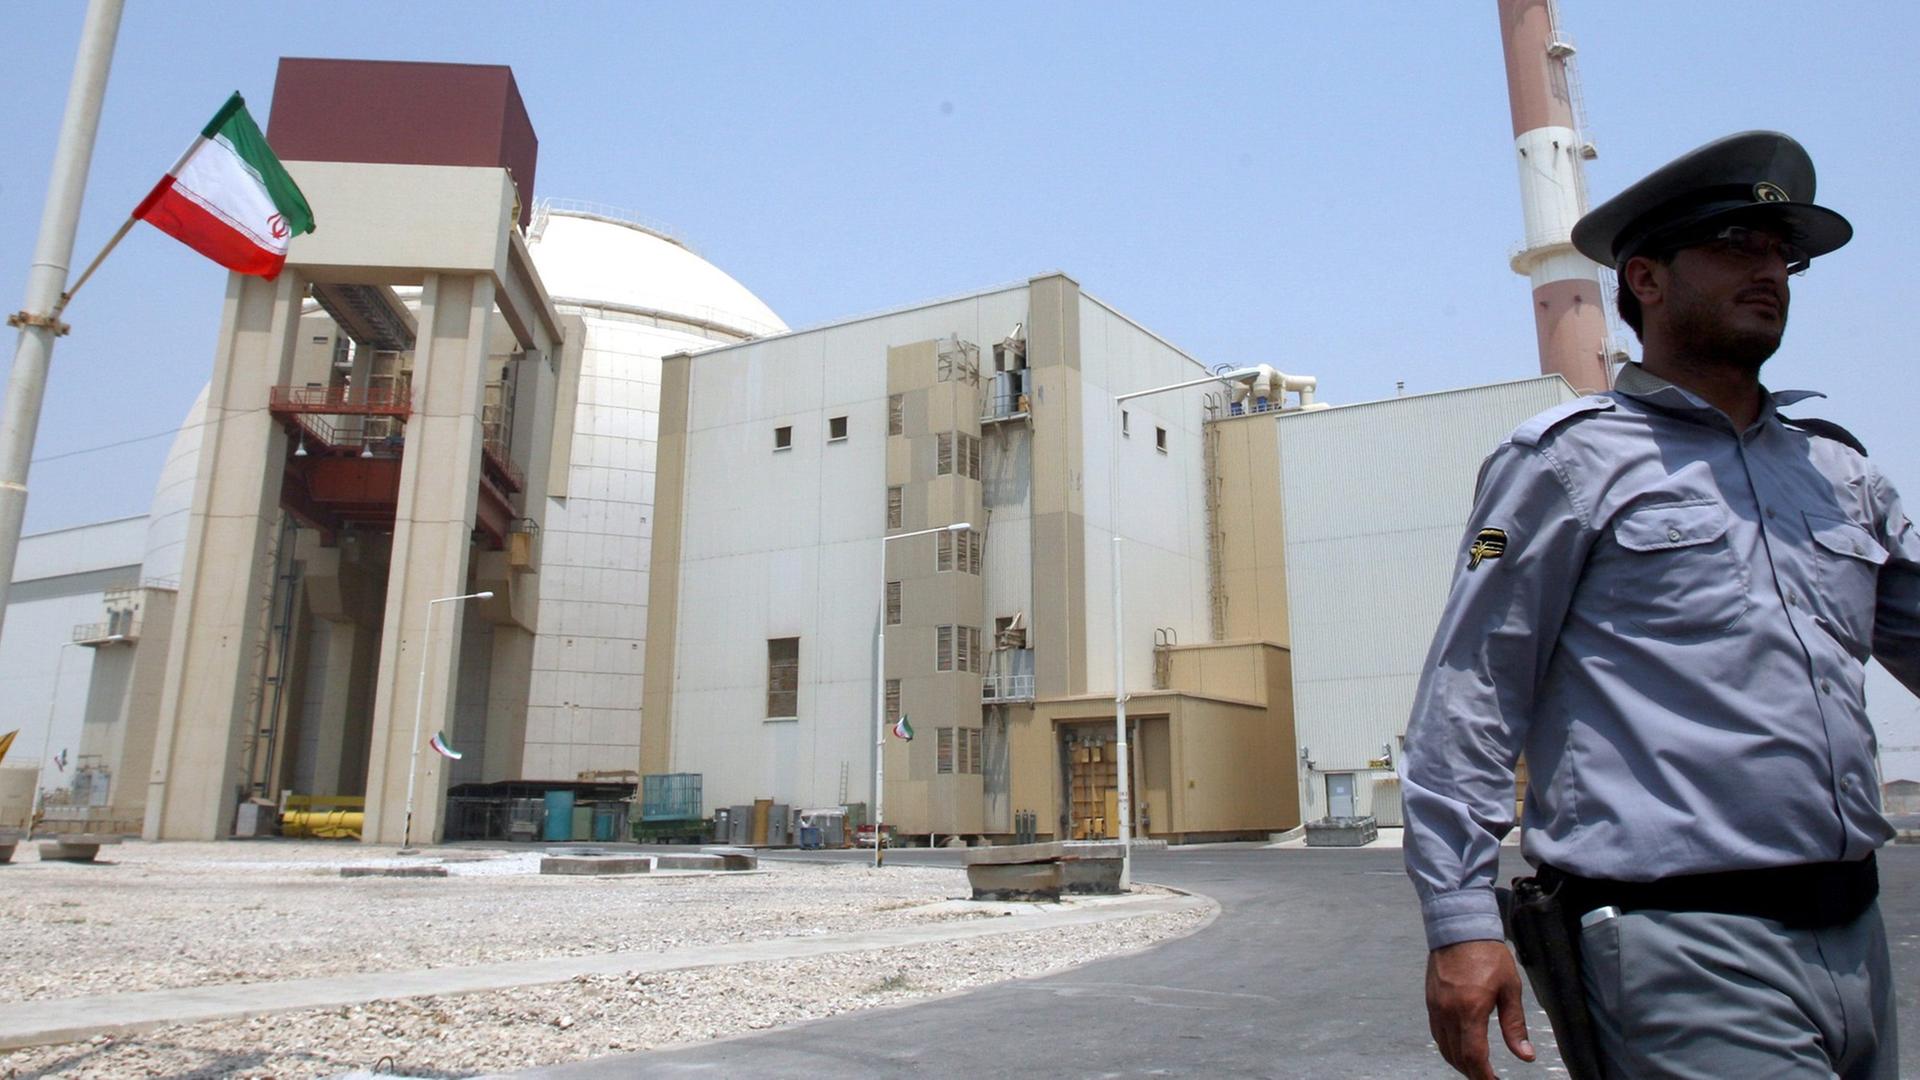 Atomprogramm - USA und Großbritannien verhängen weitere Sanktionen gegen Iran - Biden: "ziehen Iran zur Rechenschaft"